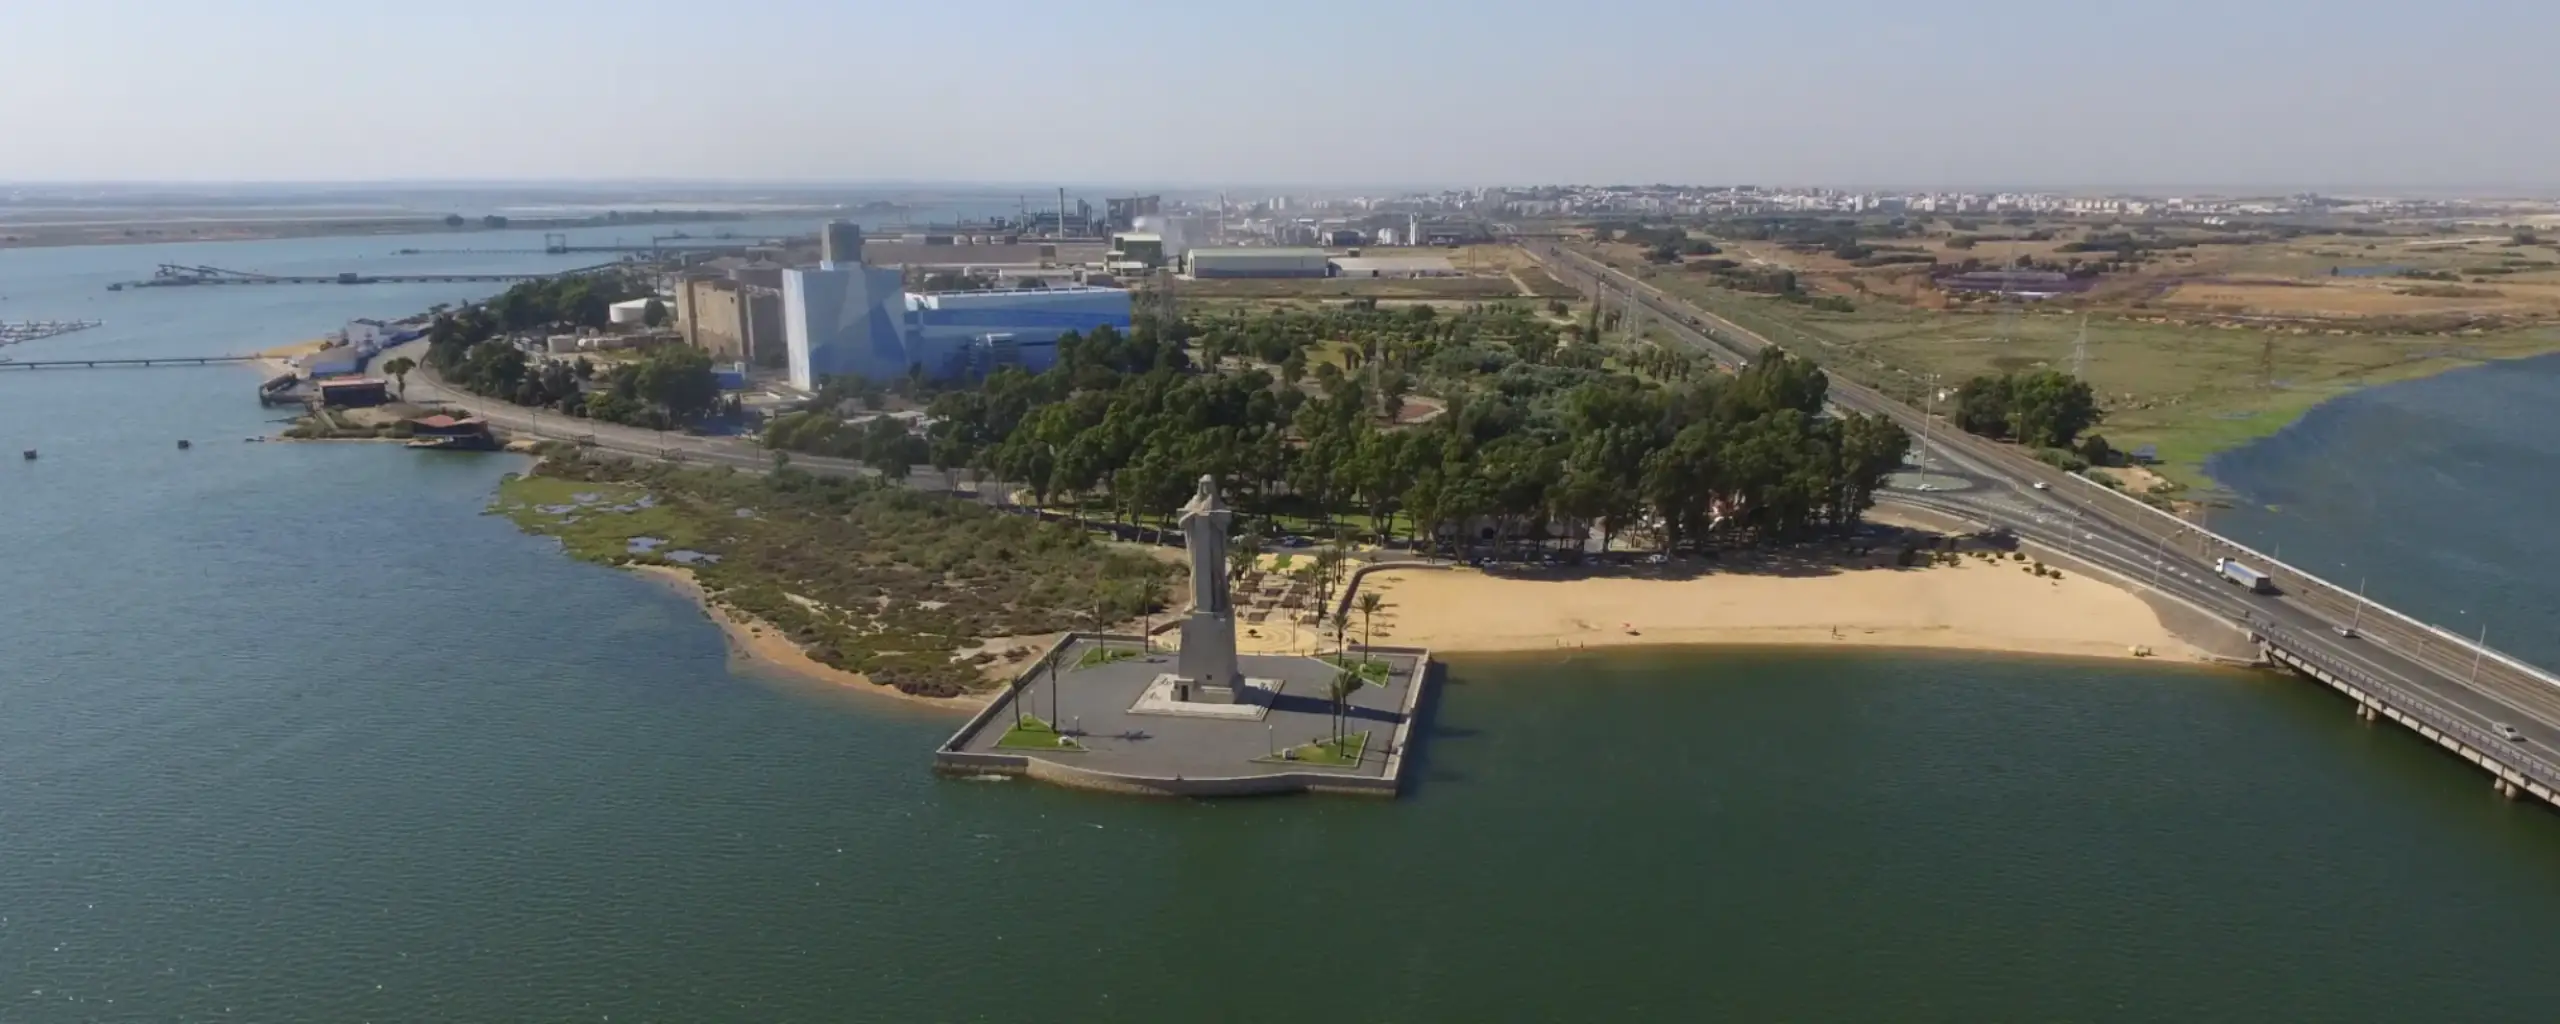 Vista panorámica del Monumento a Colón de la Punta del Sebo